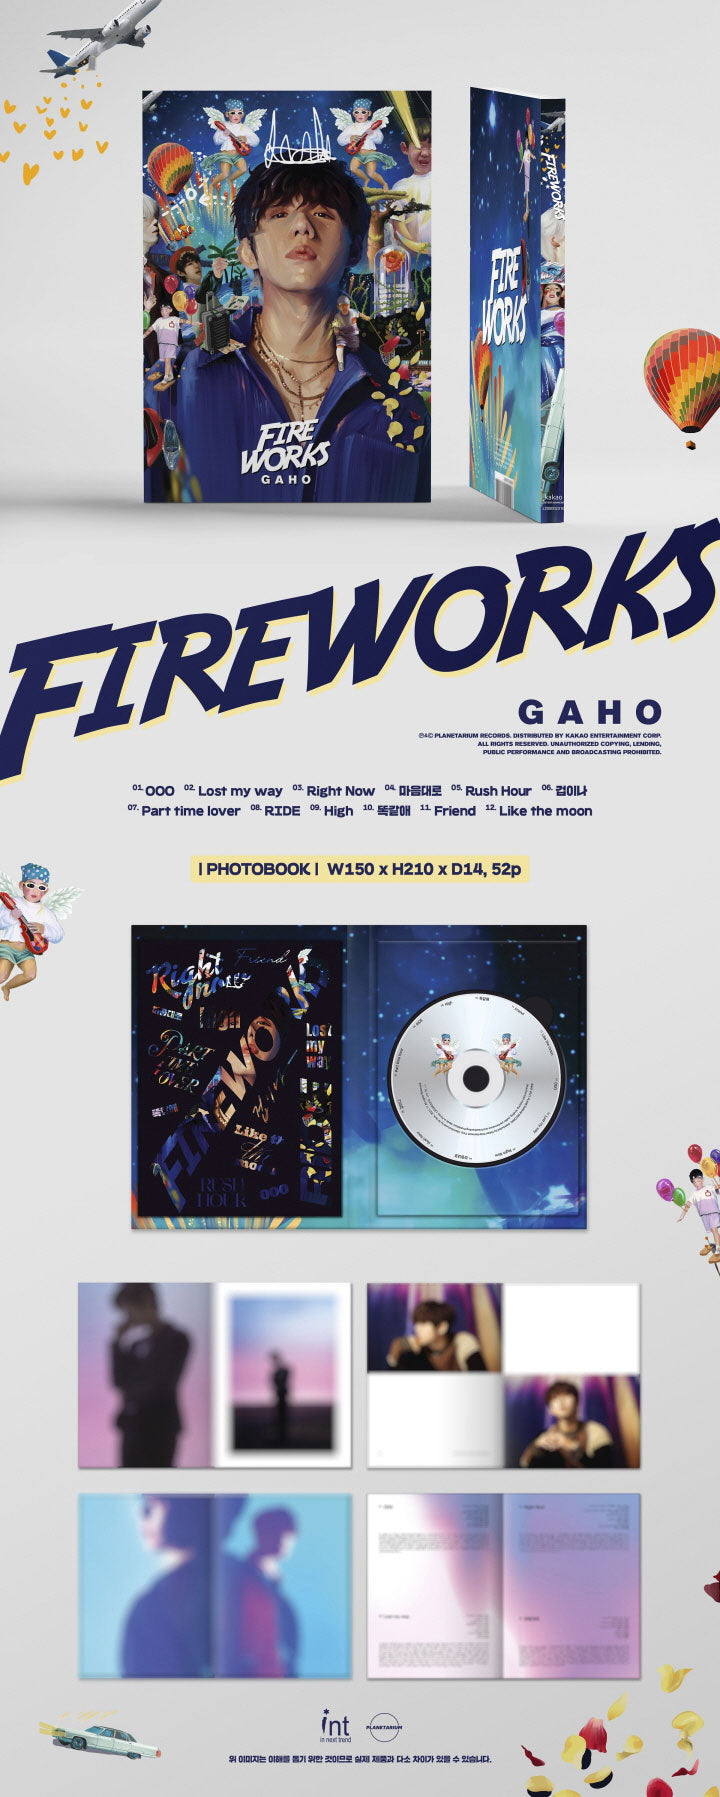 가호 | gaho the [ fireworks